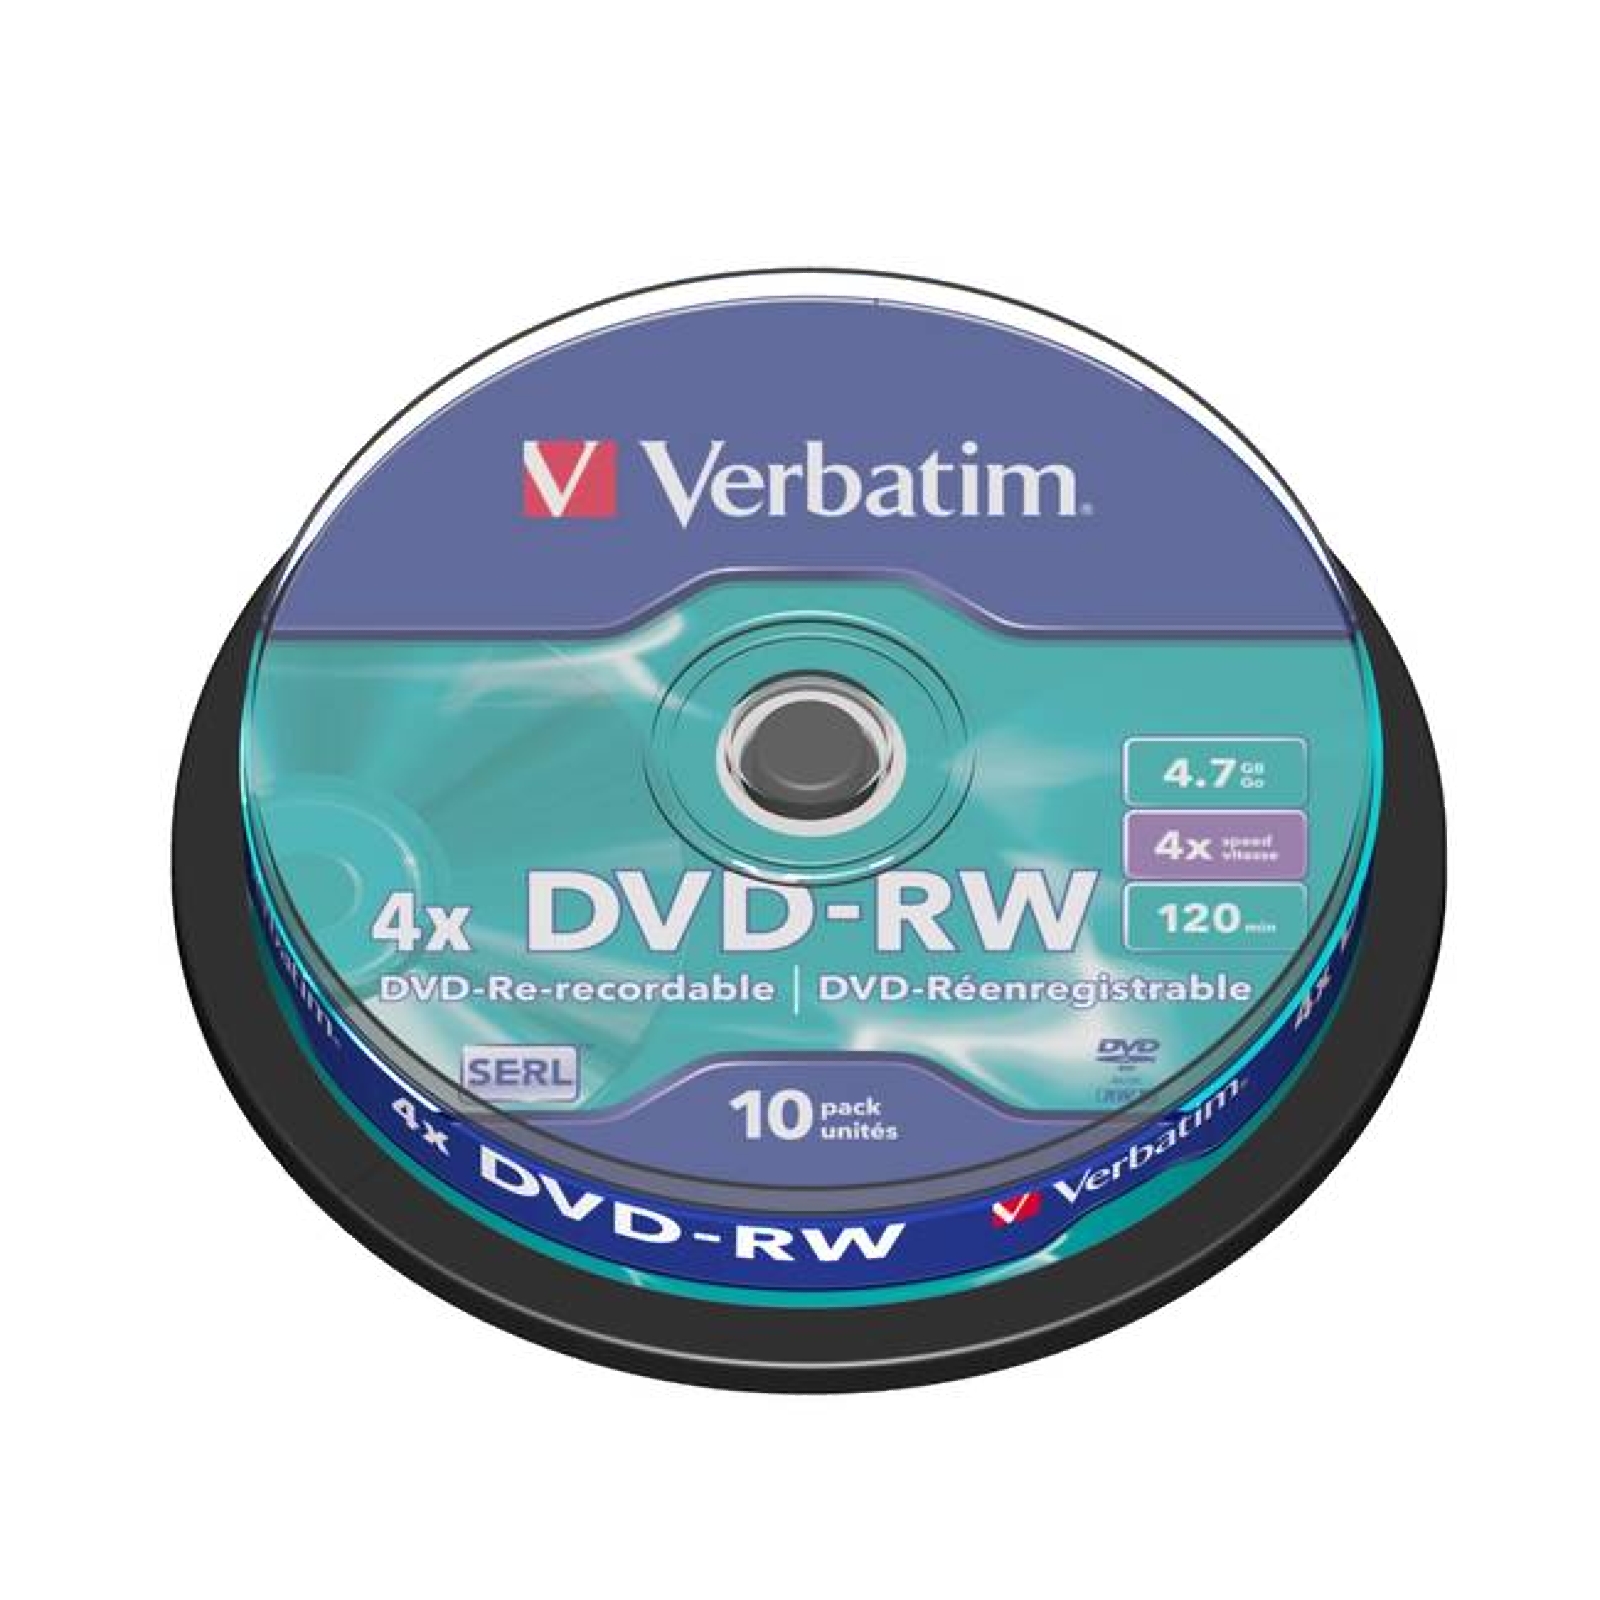 Verbatim 4x DVD-RW - Spindle Tub of 10 Discs